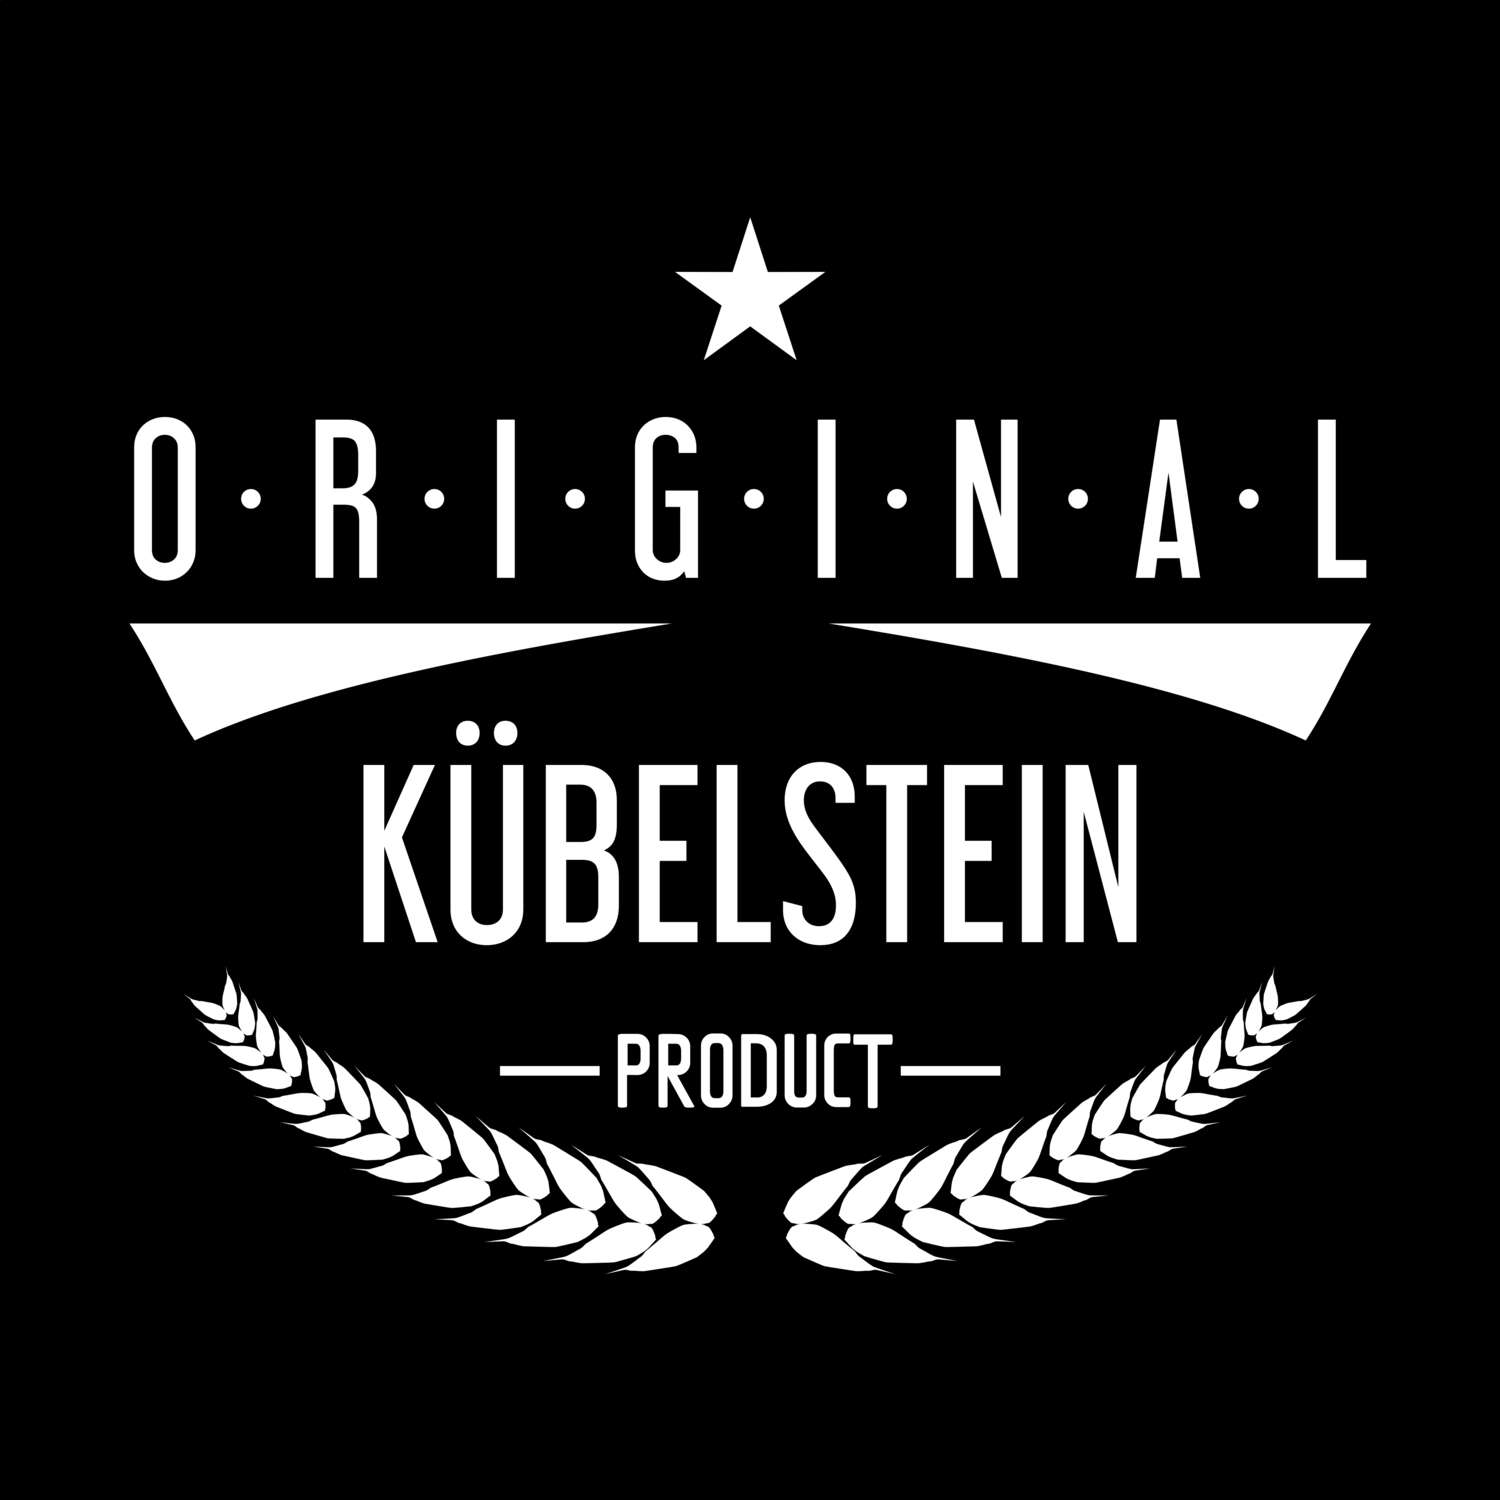 Kübelstein T-Shirt »Original Product«